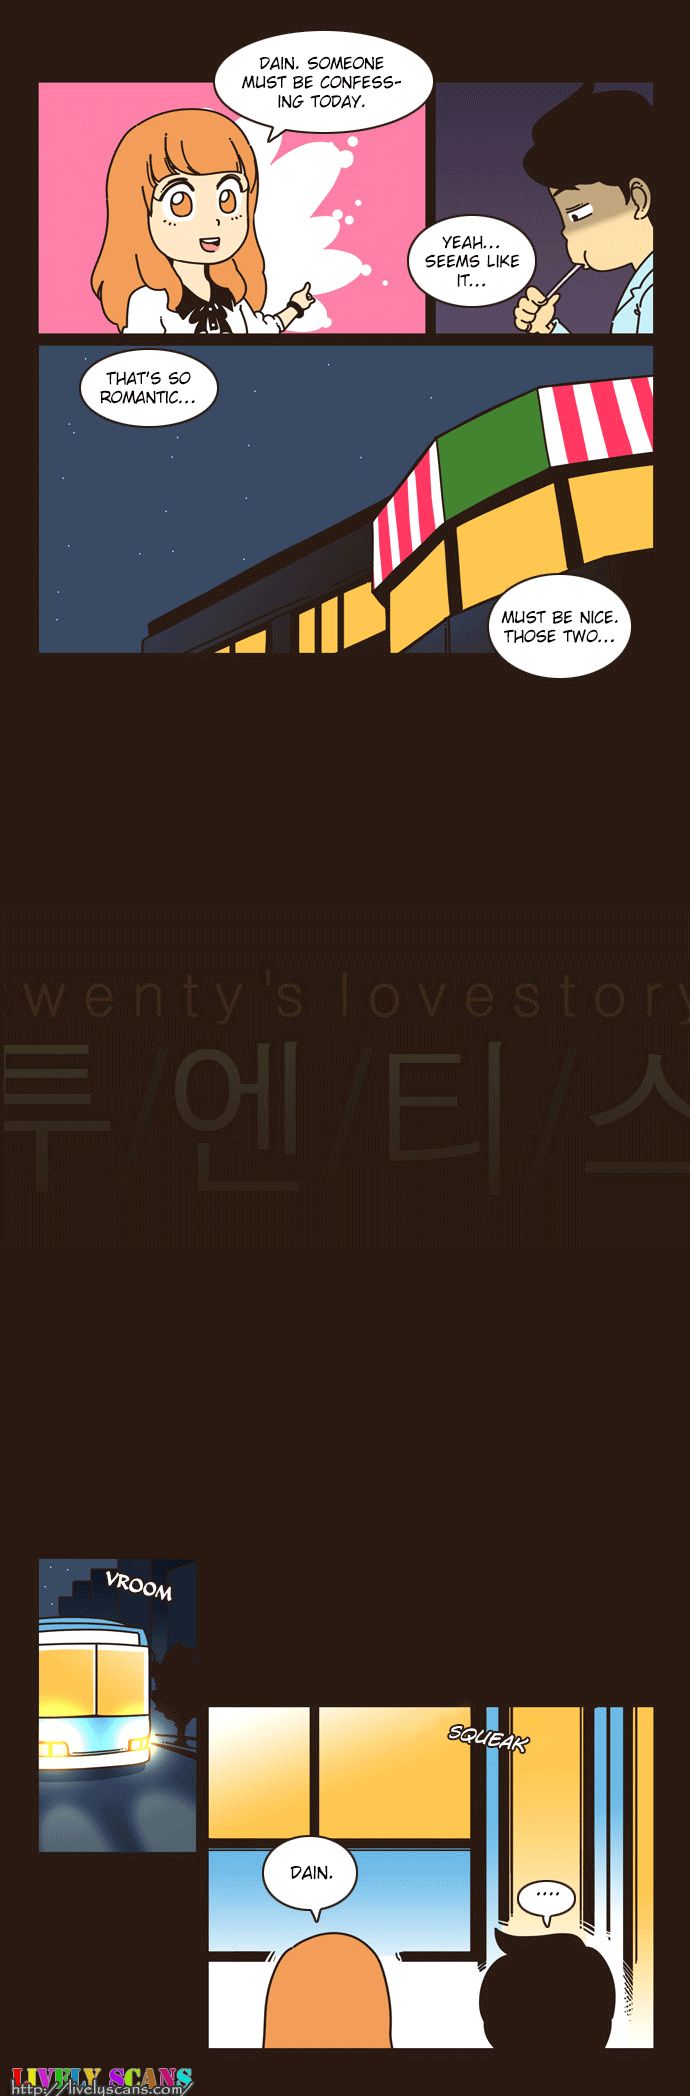 Twenty's Lovestory 13